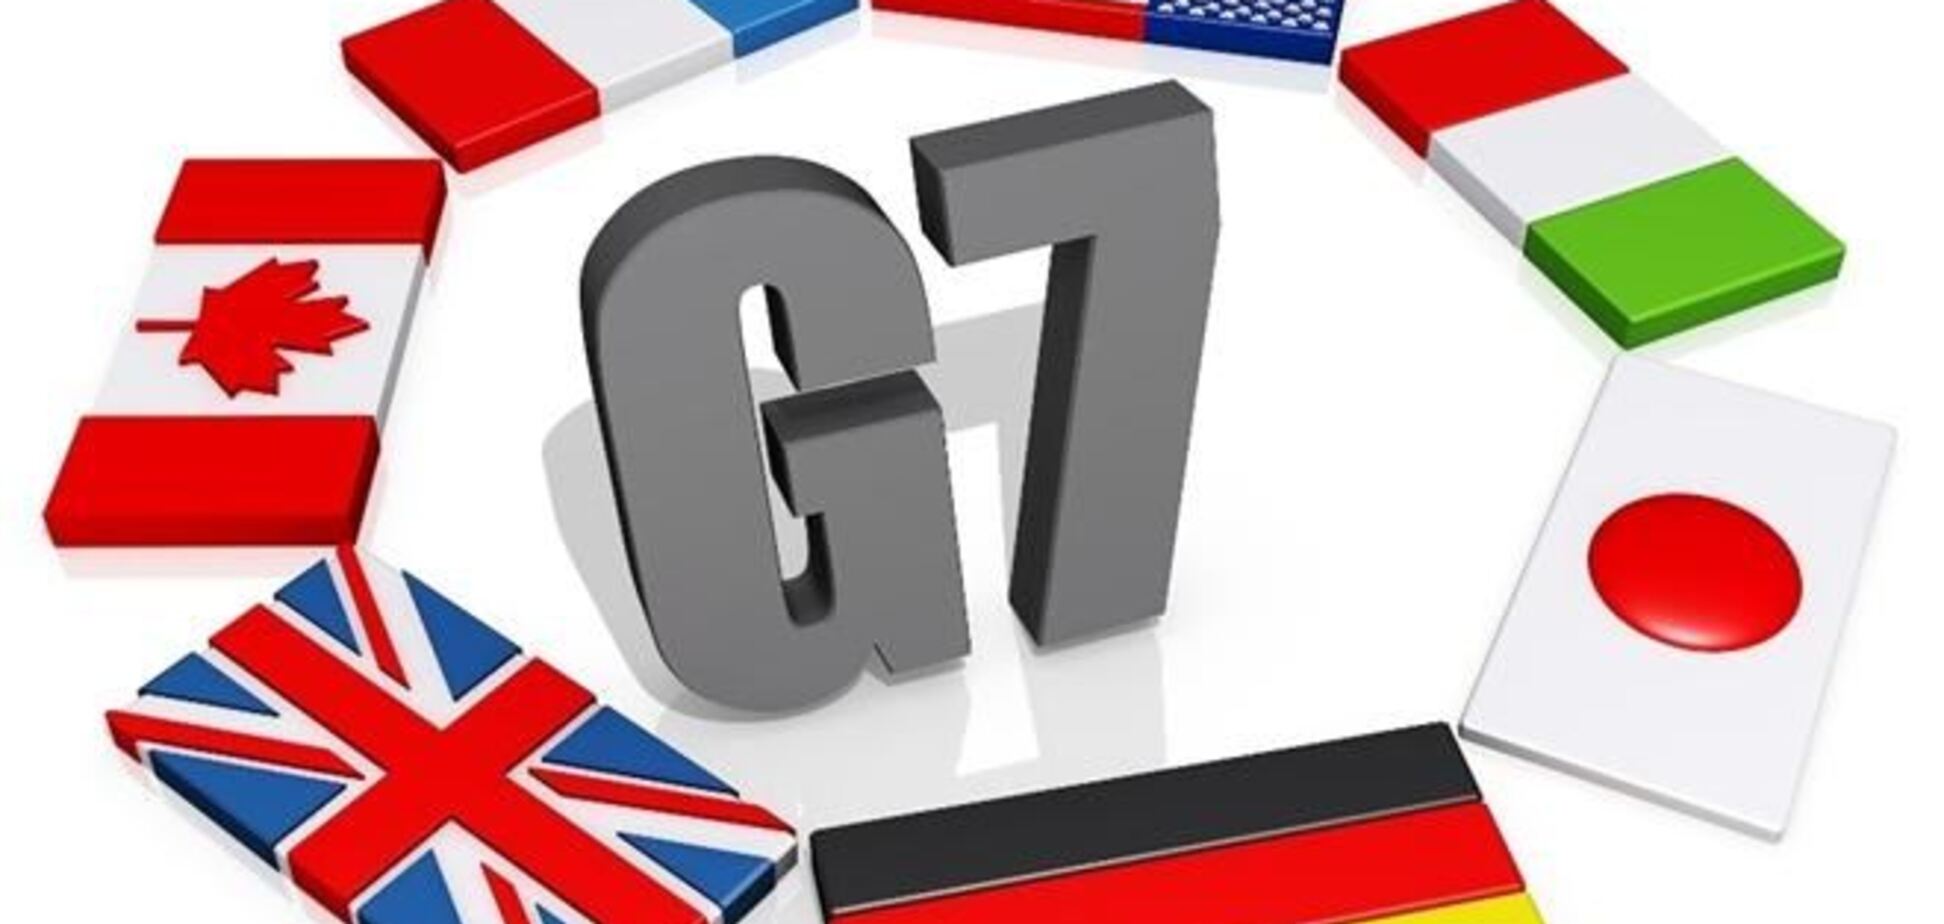 Саммит G7 пройдет в Брюсселе вместо саммита G8 в Сочи